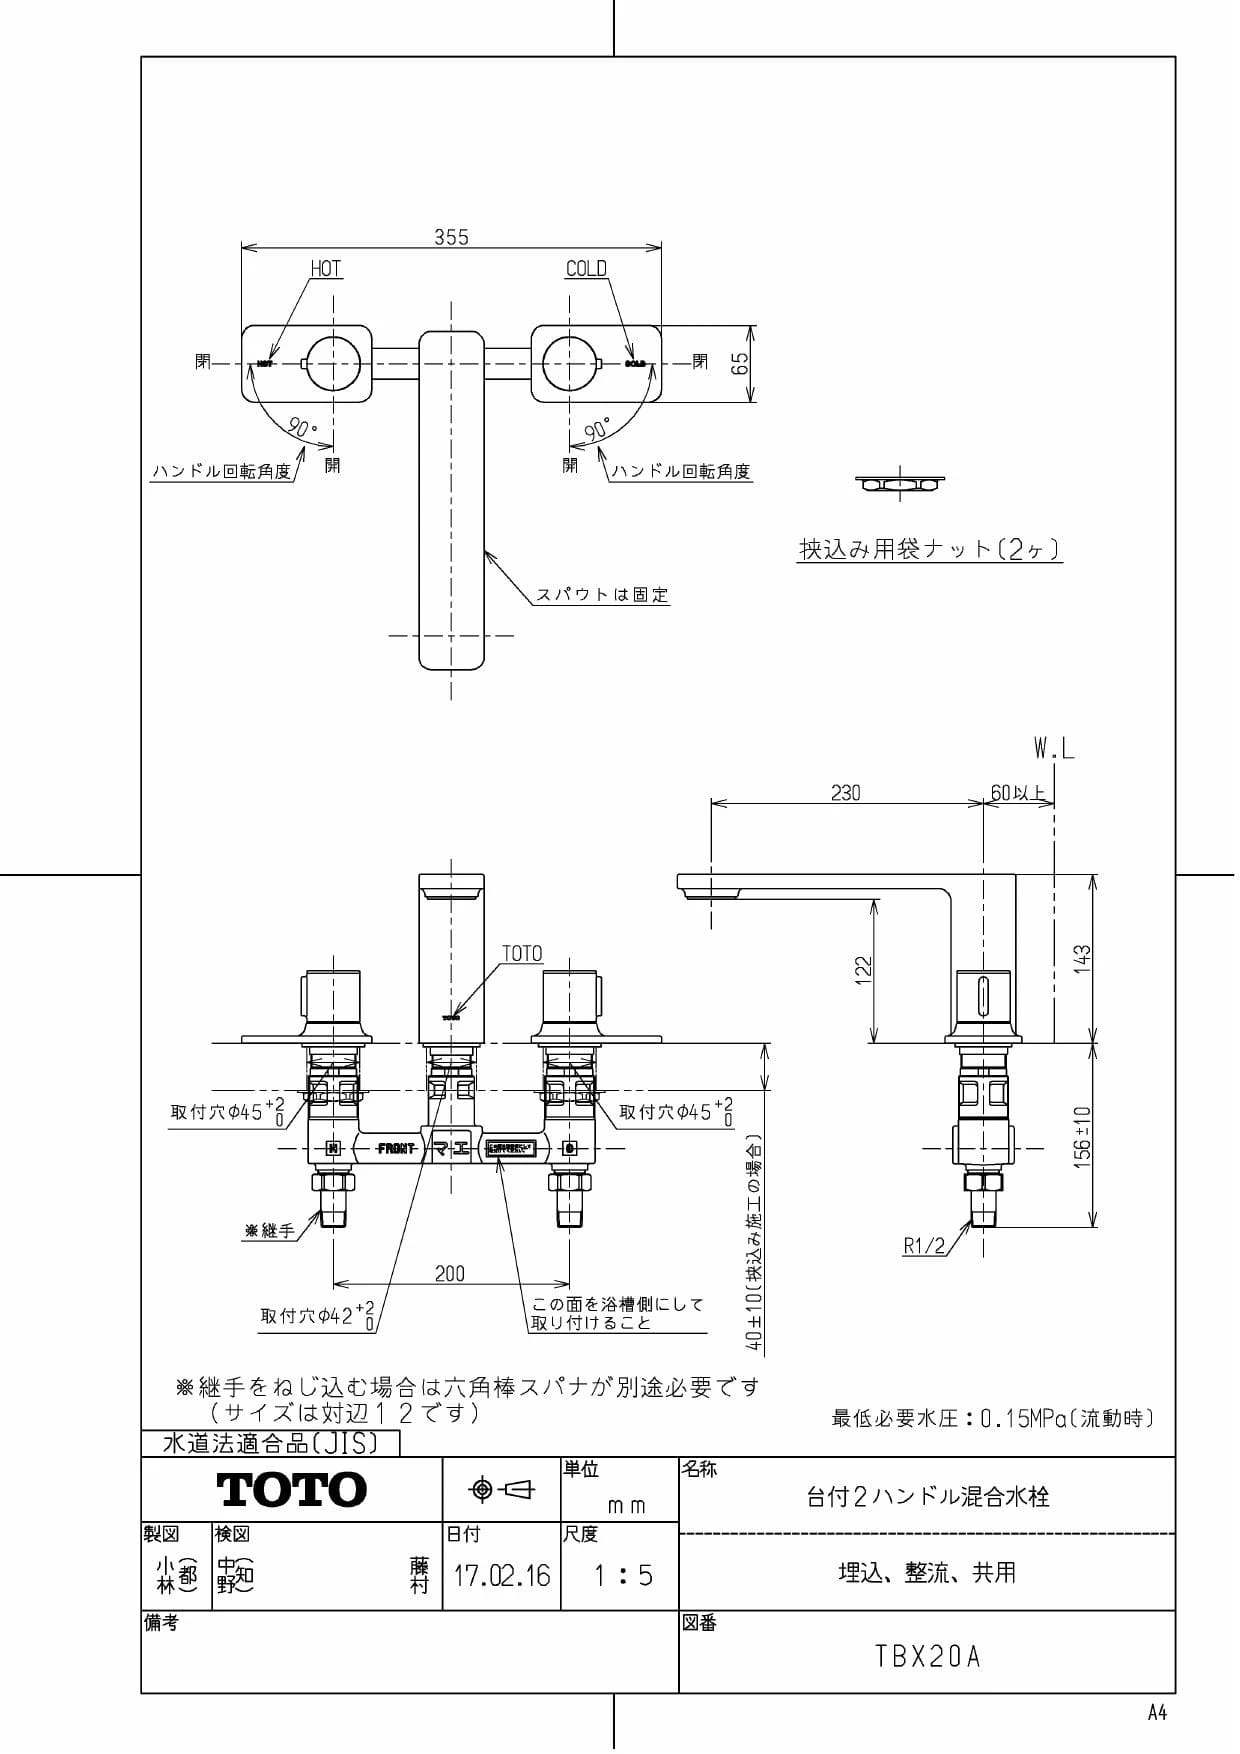 富士インパルス ポリシーラー PC-300 品番 01351C - 1